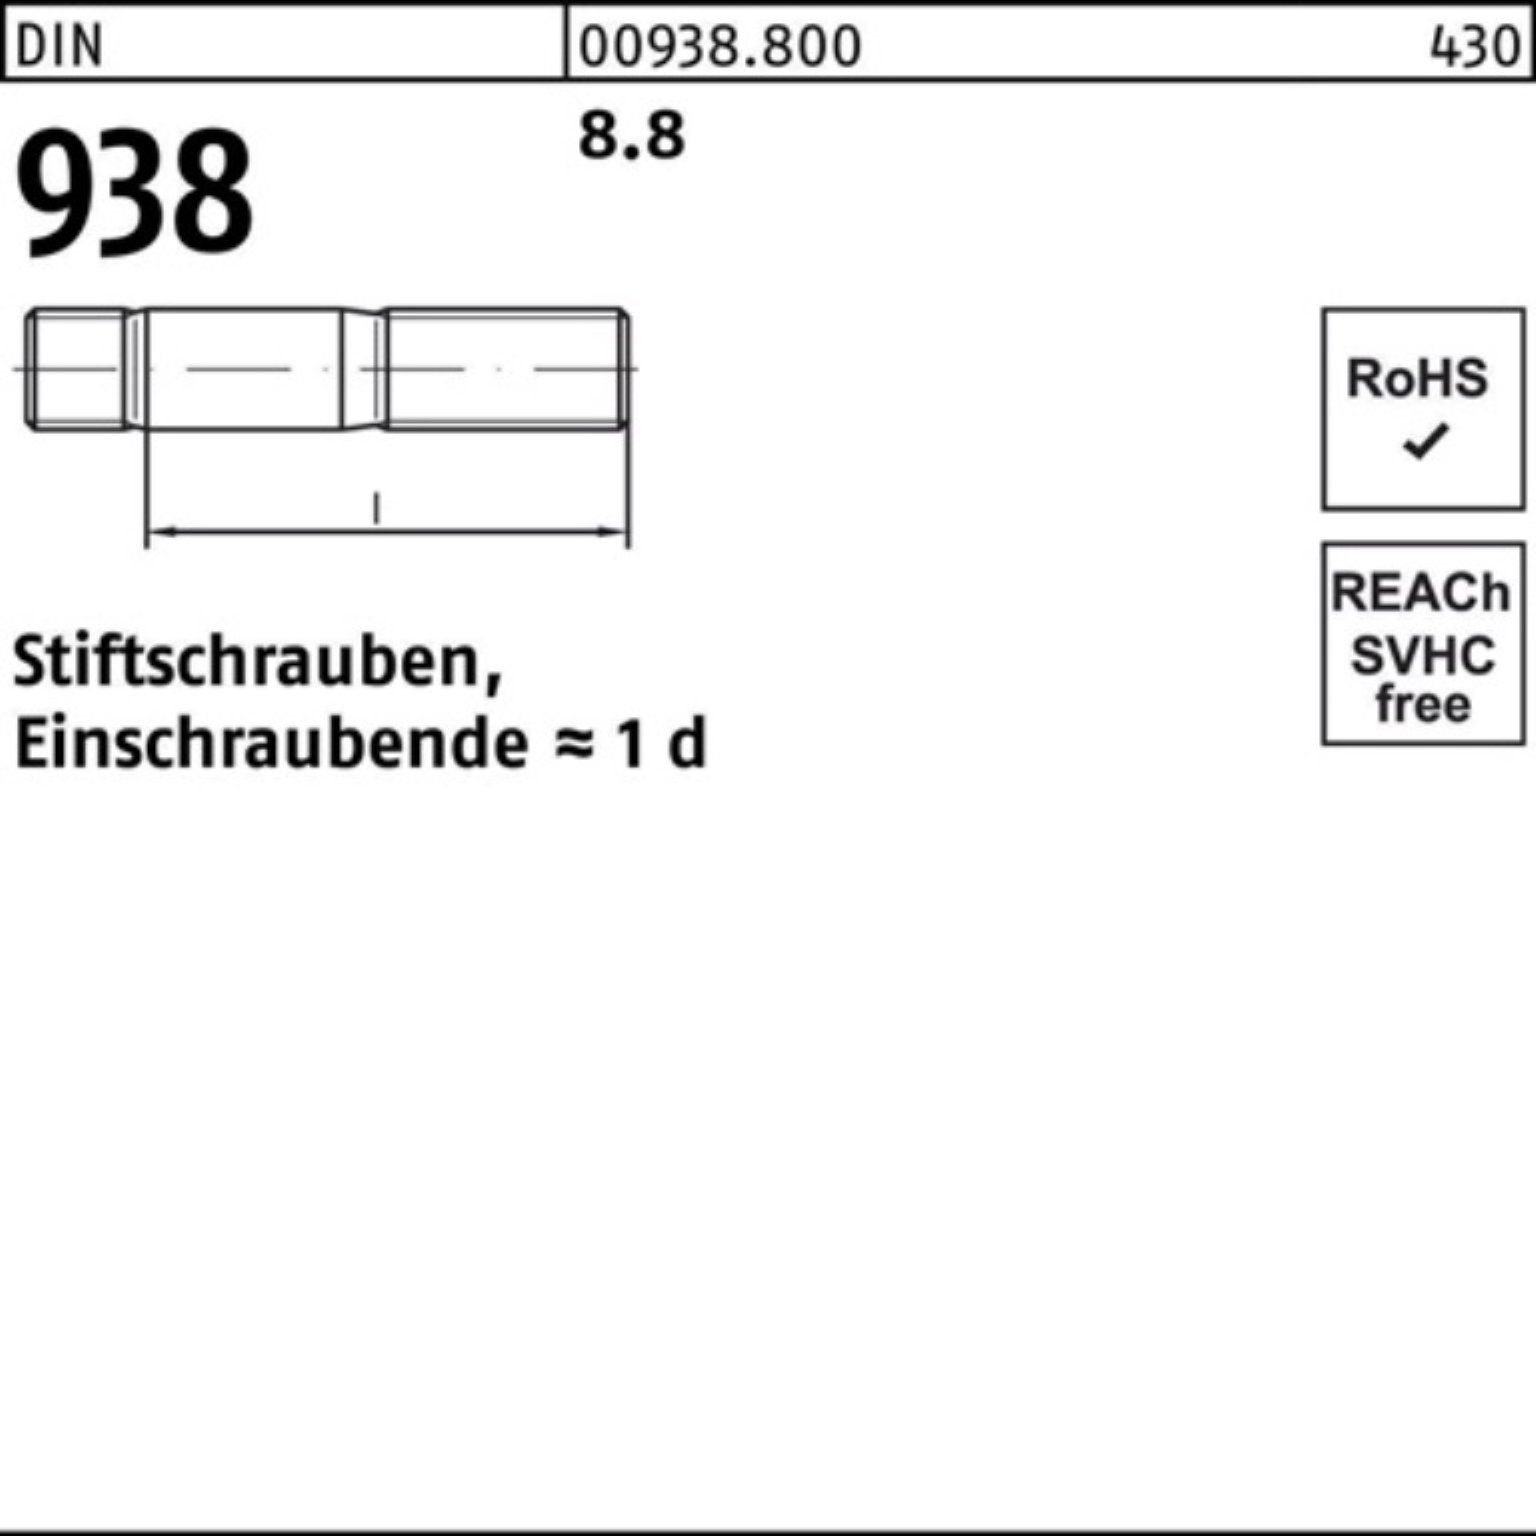 Sti 8.8 100er 1 Stiftschraube M24x 938 Reyher DIN 120 Stück 938 Stiftschraube 8.8 DIN Pack